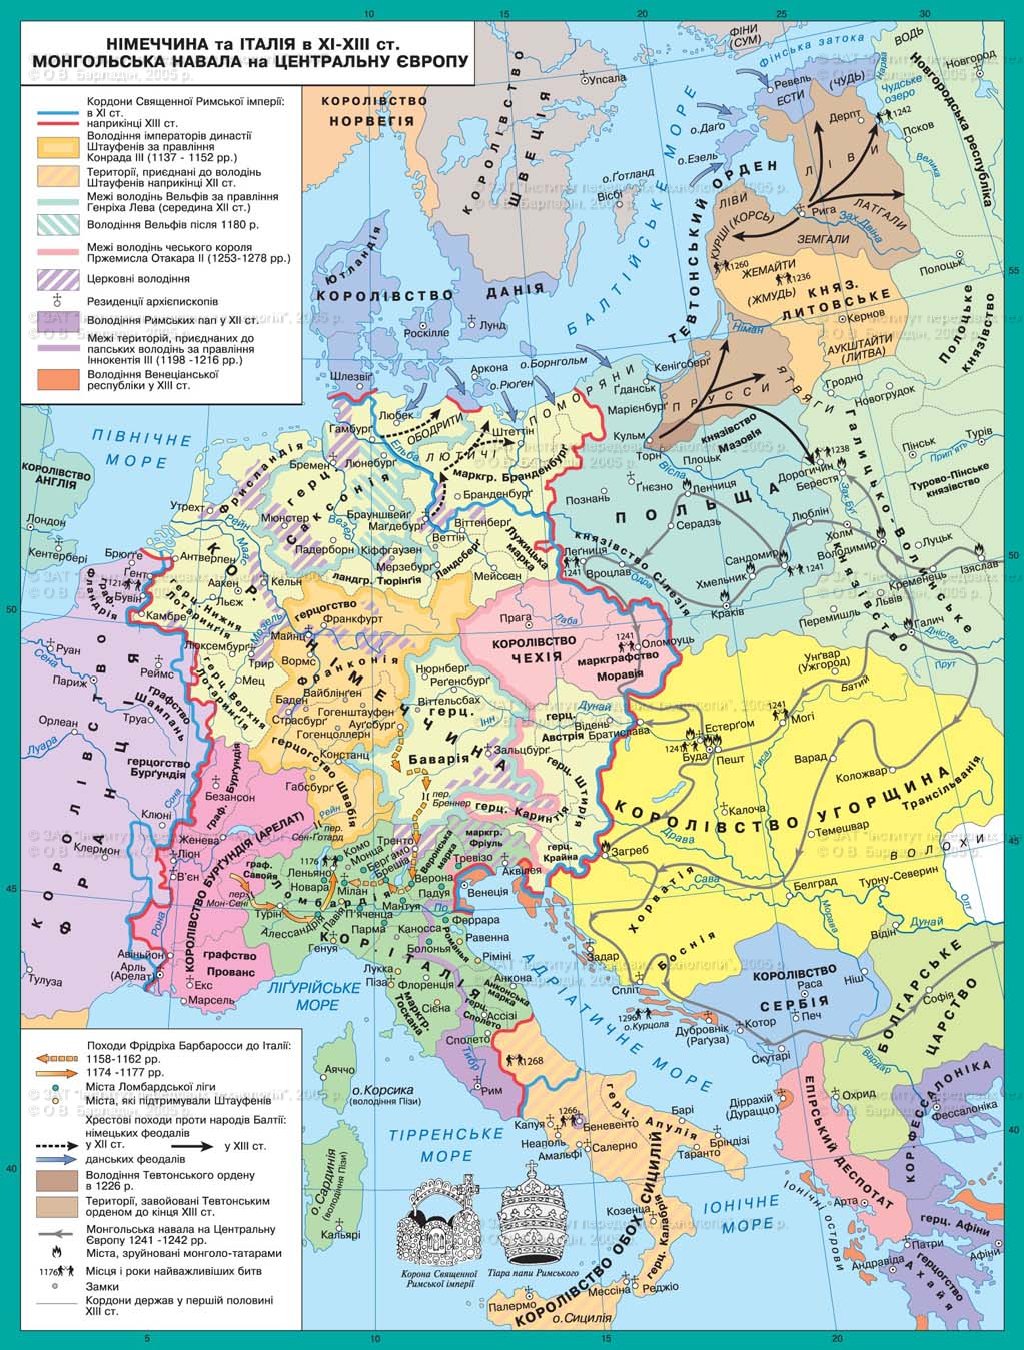 Карта европы 15 век. Карта Европы XII века. Карта Европы 12-13 веков. Карта Европы 13 века. Карта Европы XIII века.